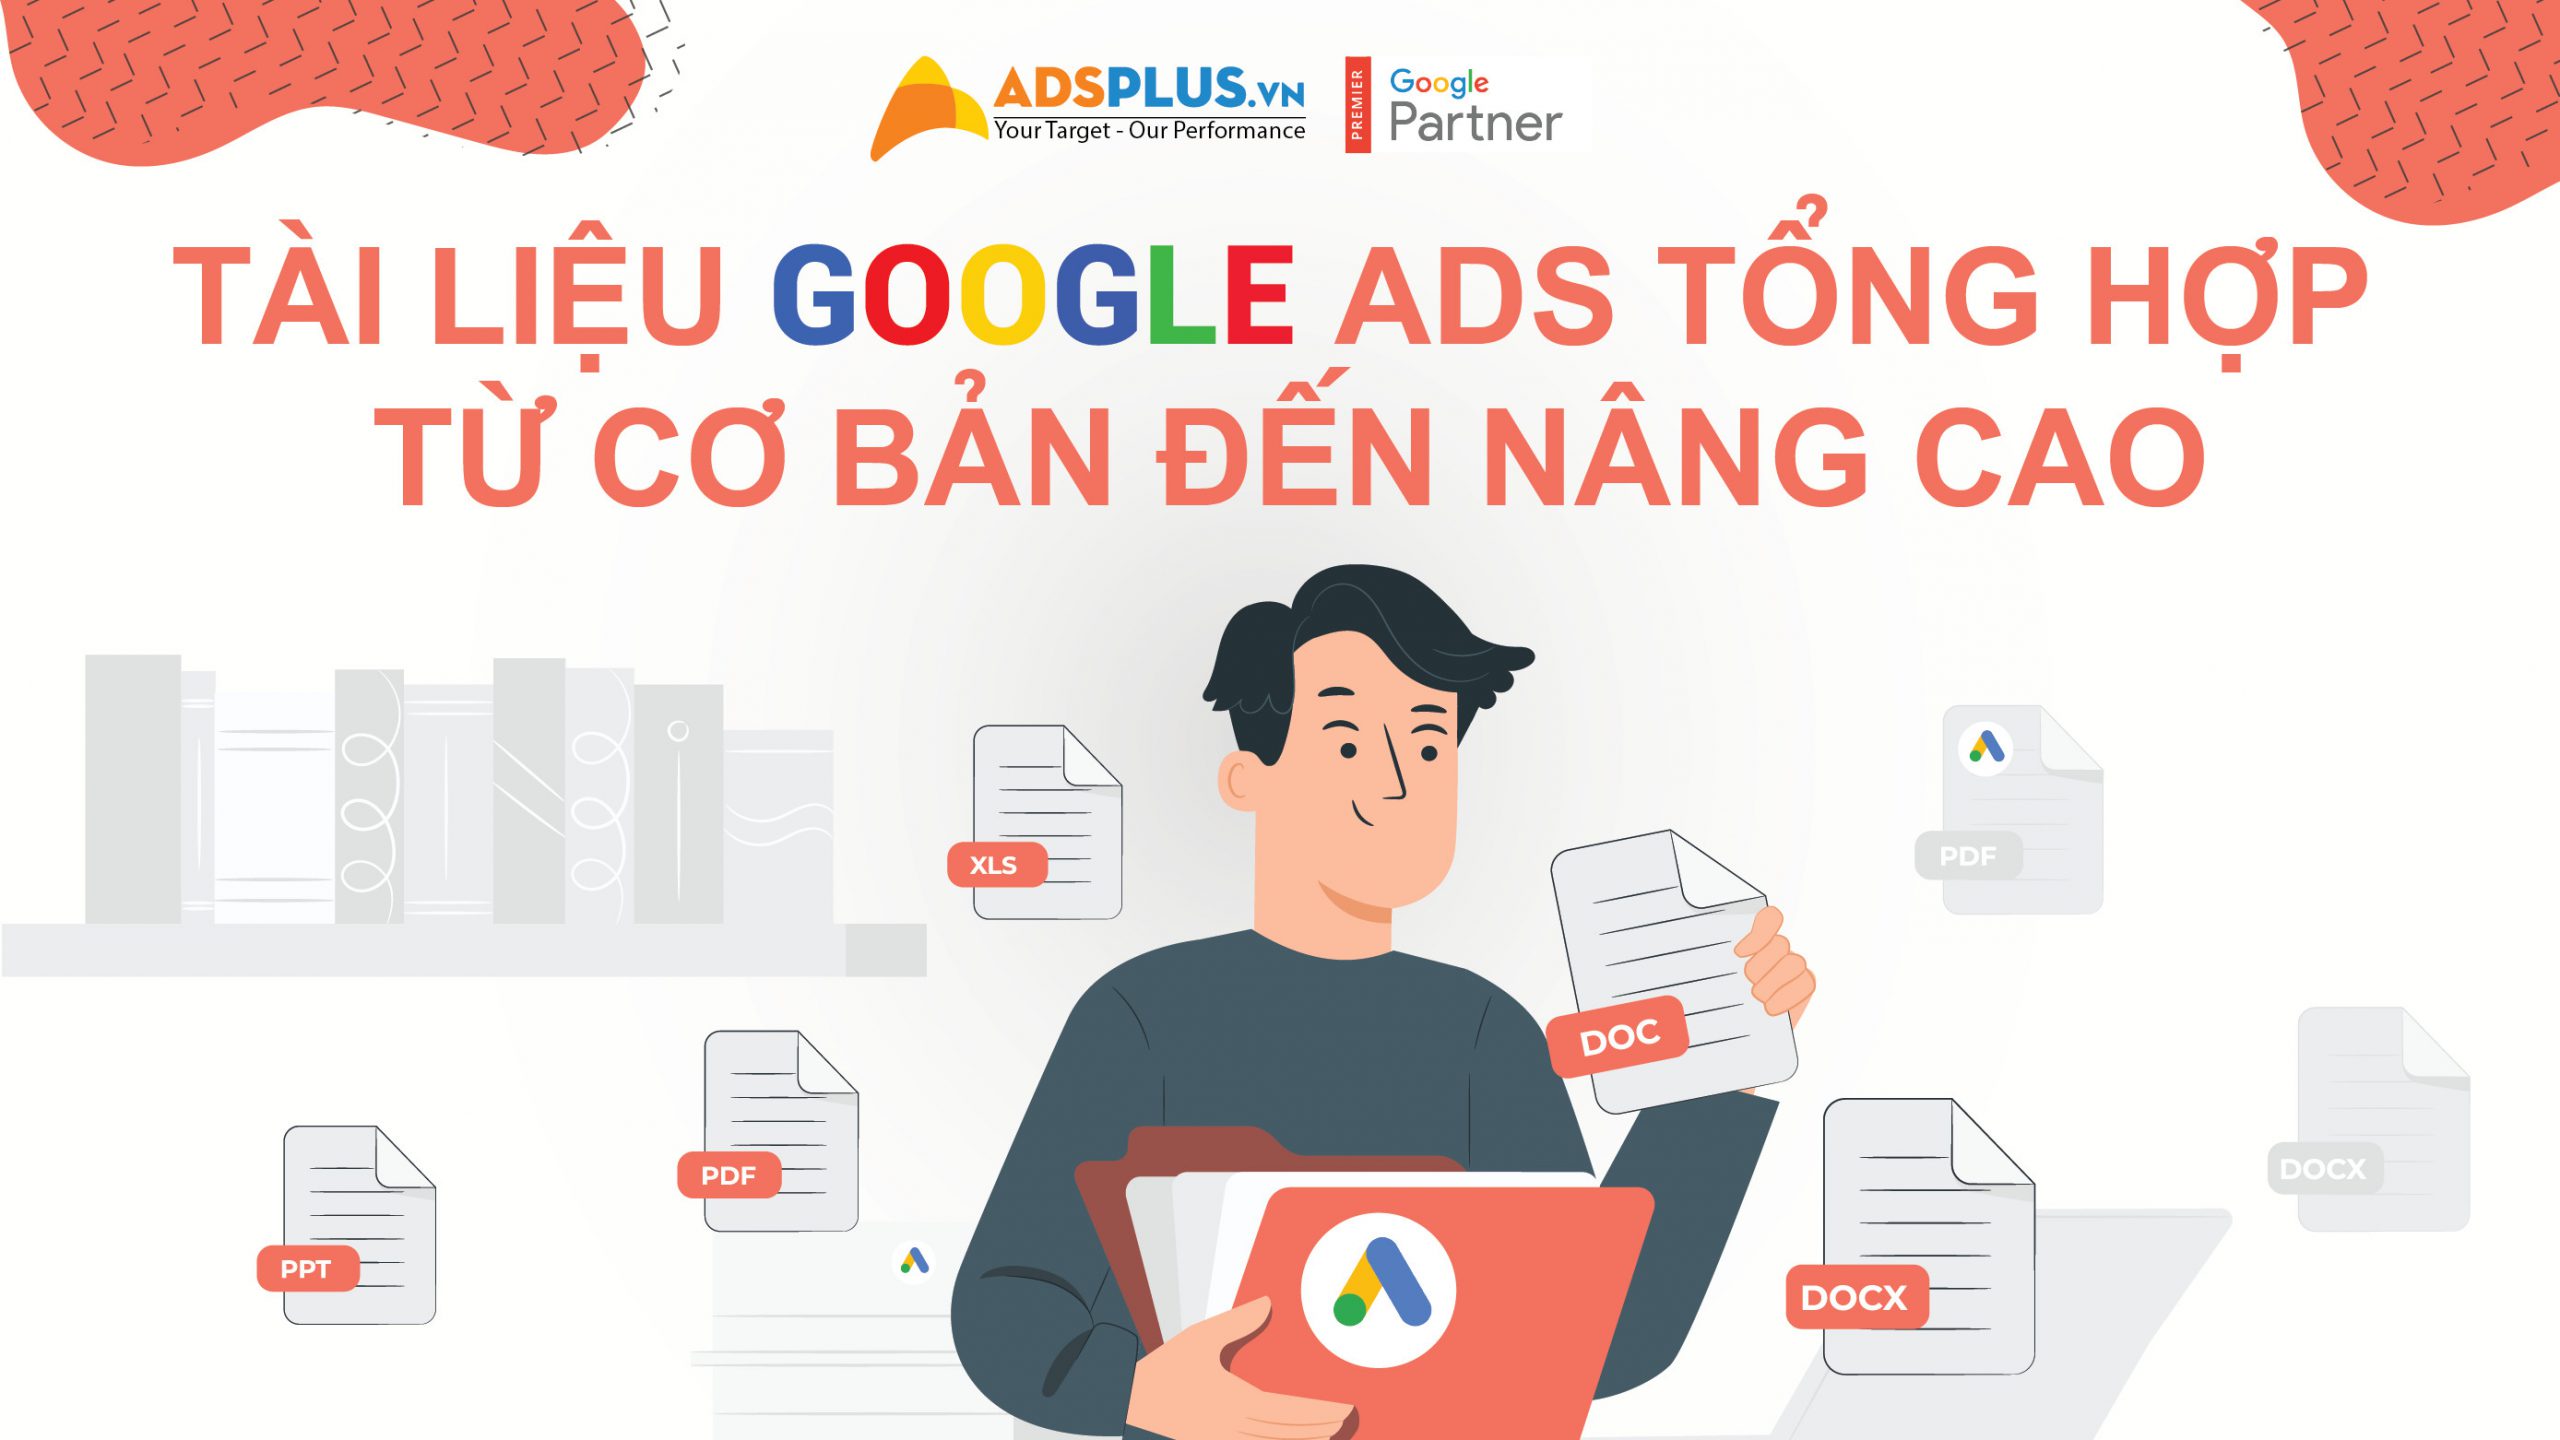 Tài liệu Google Ads tổng hợp